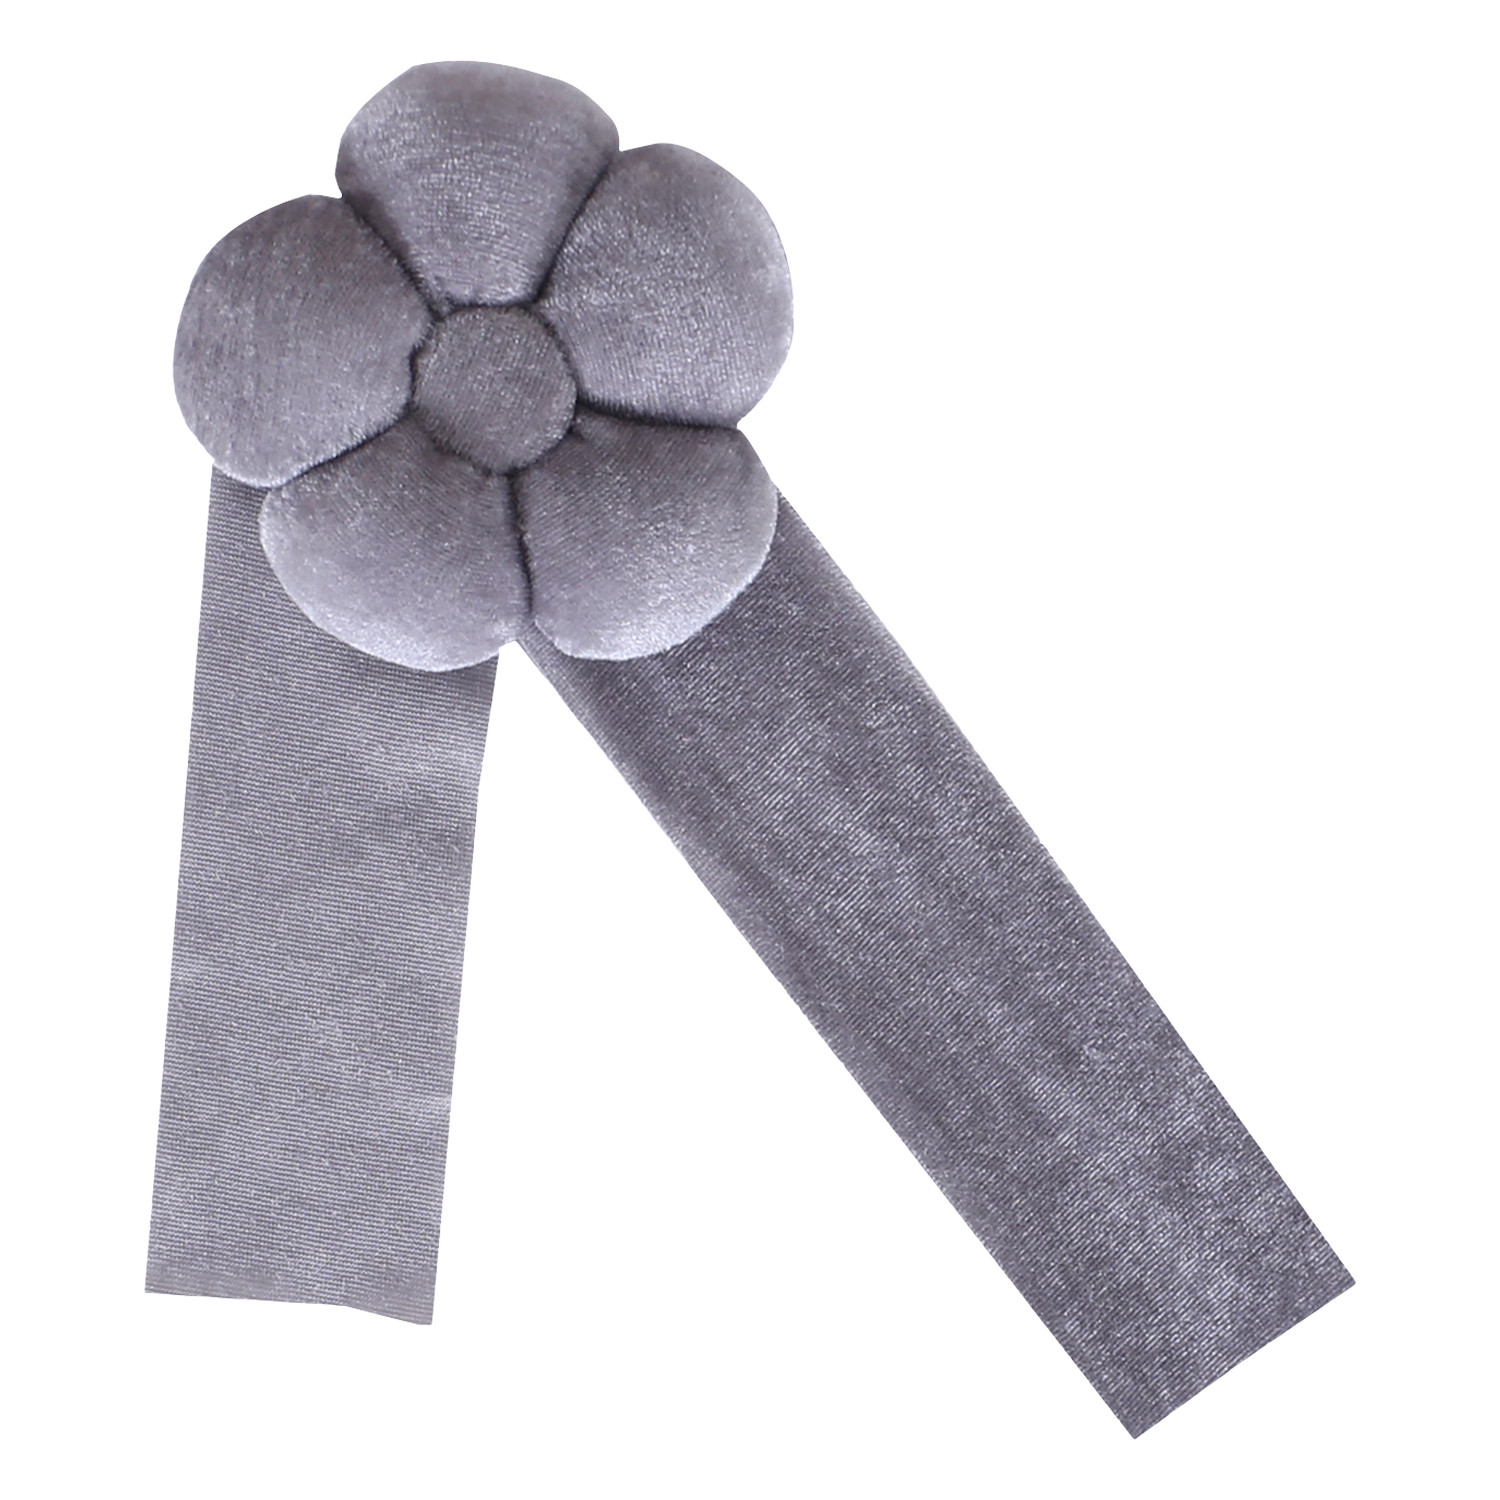 Kuber Industries Curtain Tassel | Velvet Flower Tieback Curtain Tassel |Tassel for Home Decorative | 2 Pieces Drape Tie Back Tassel for Home | Office | Gray